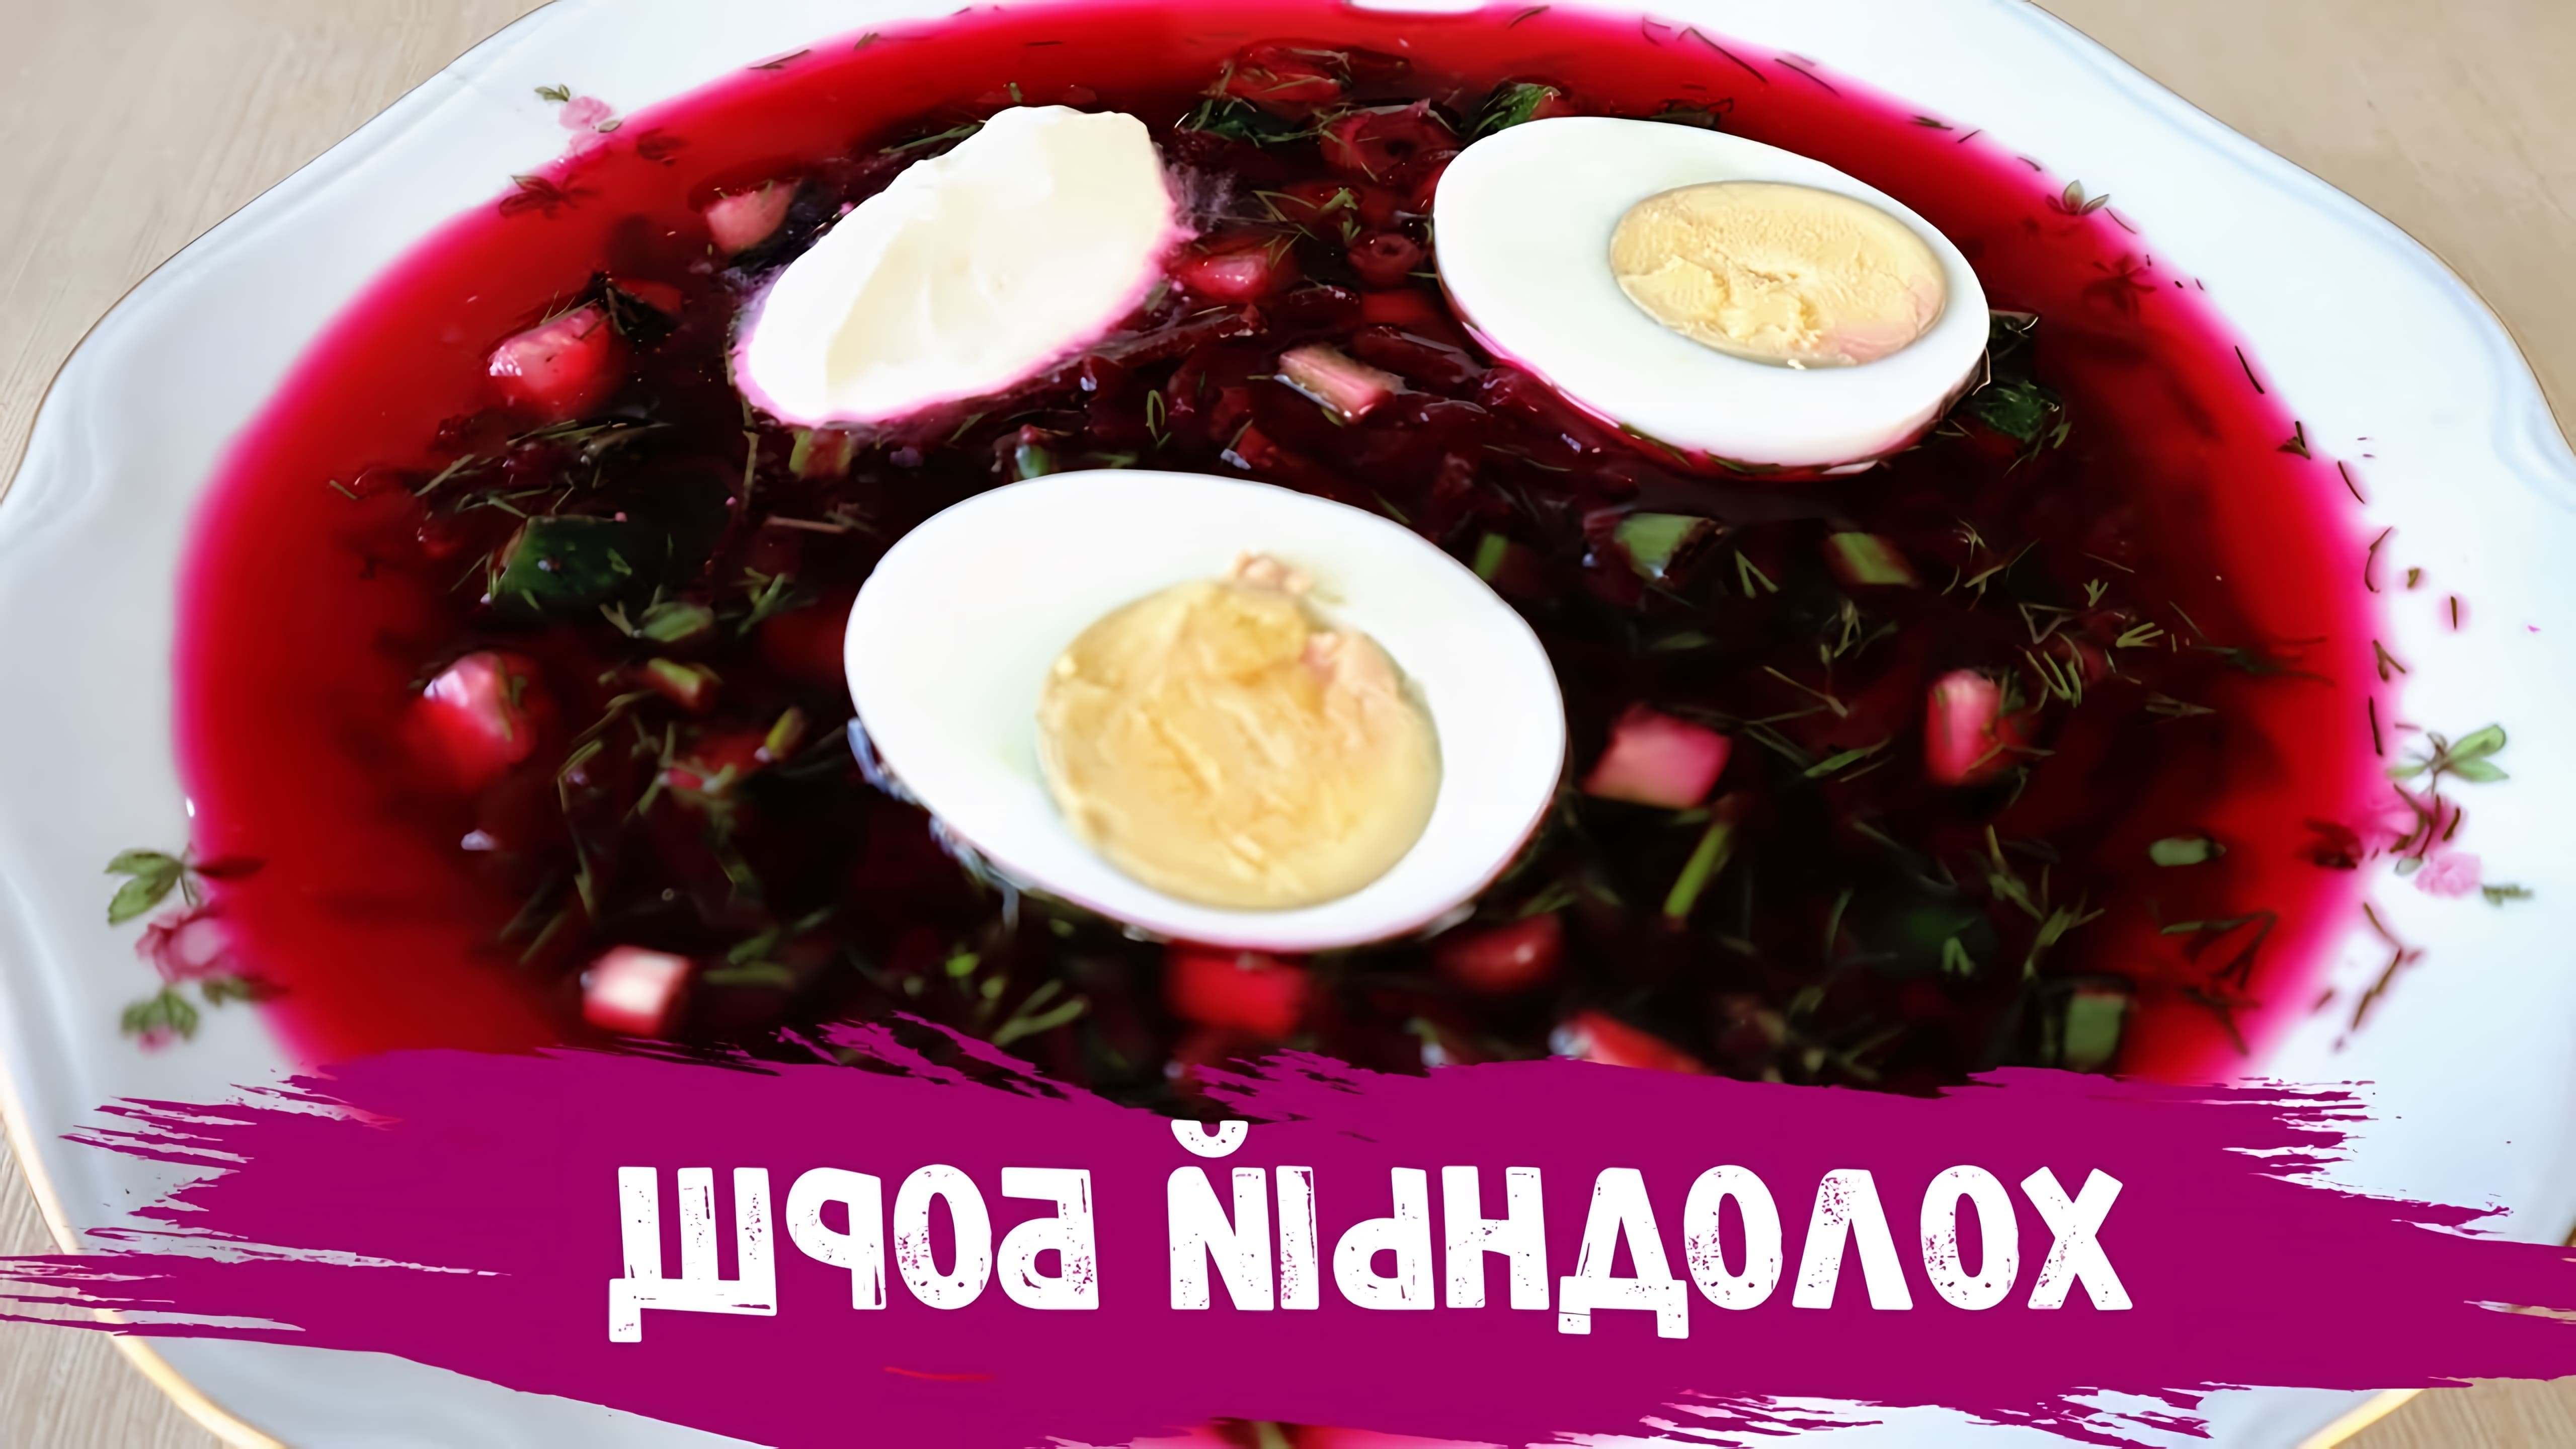 В этом видео демонстрируется процесс приготовления холодного борща, или холодника, который является блюдом белорусской кухни